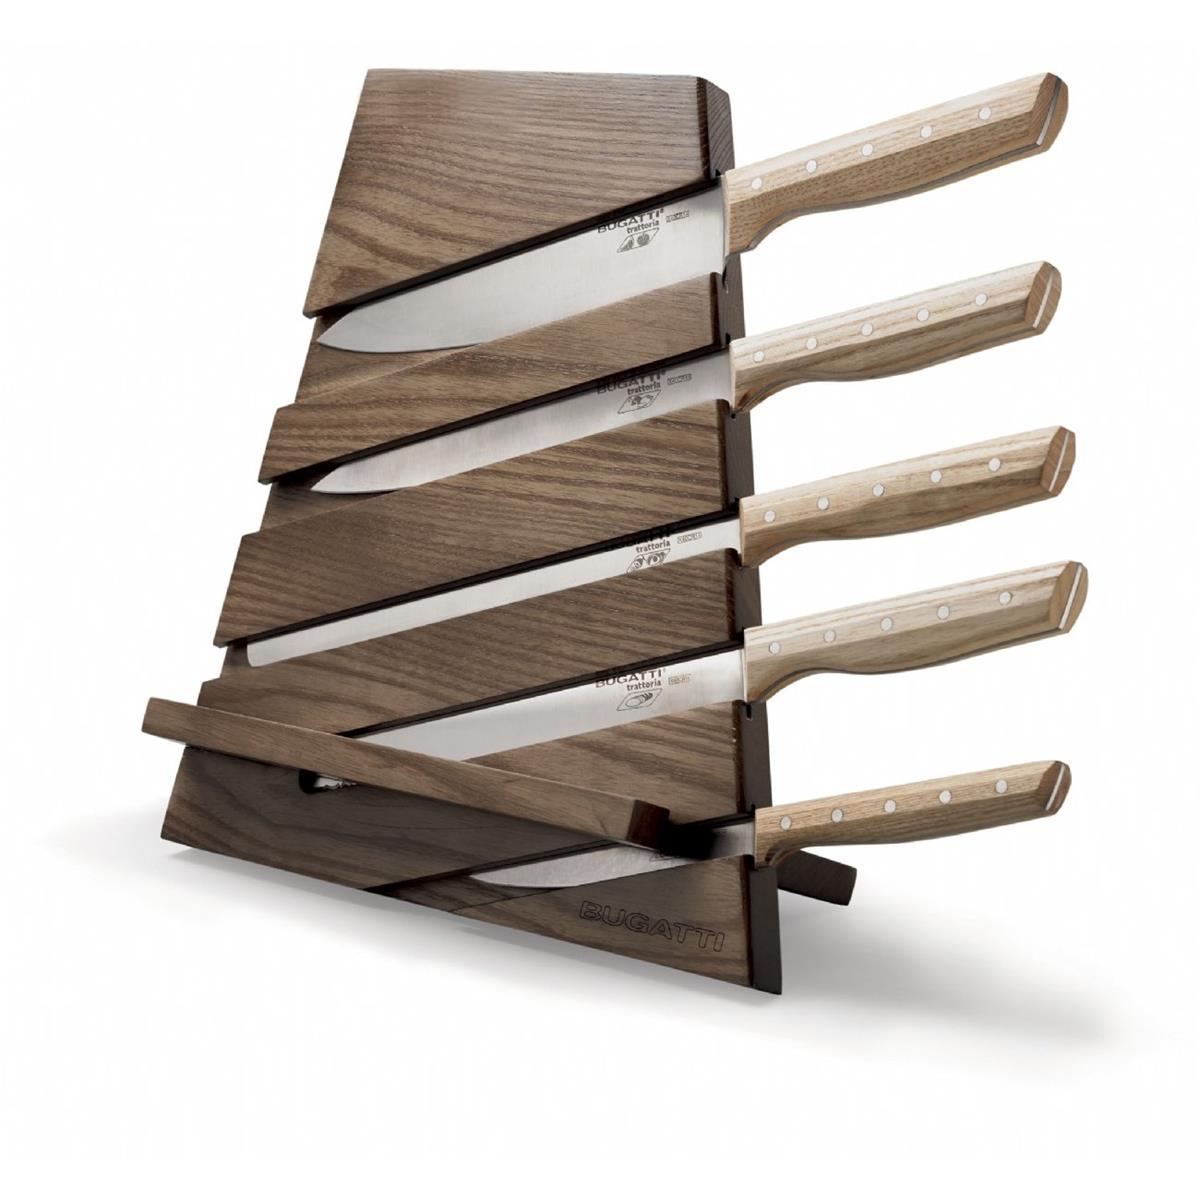 CEPPO TRATTORIA – aus Holz mit Schneidebrett und Rednerpult – 5 Messer mit Holzgriff – Tabakfarbe